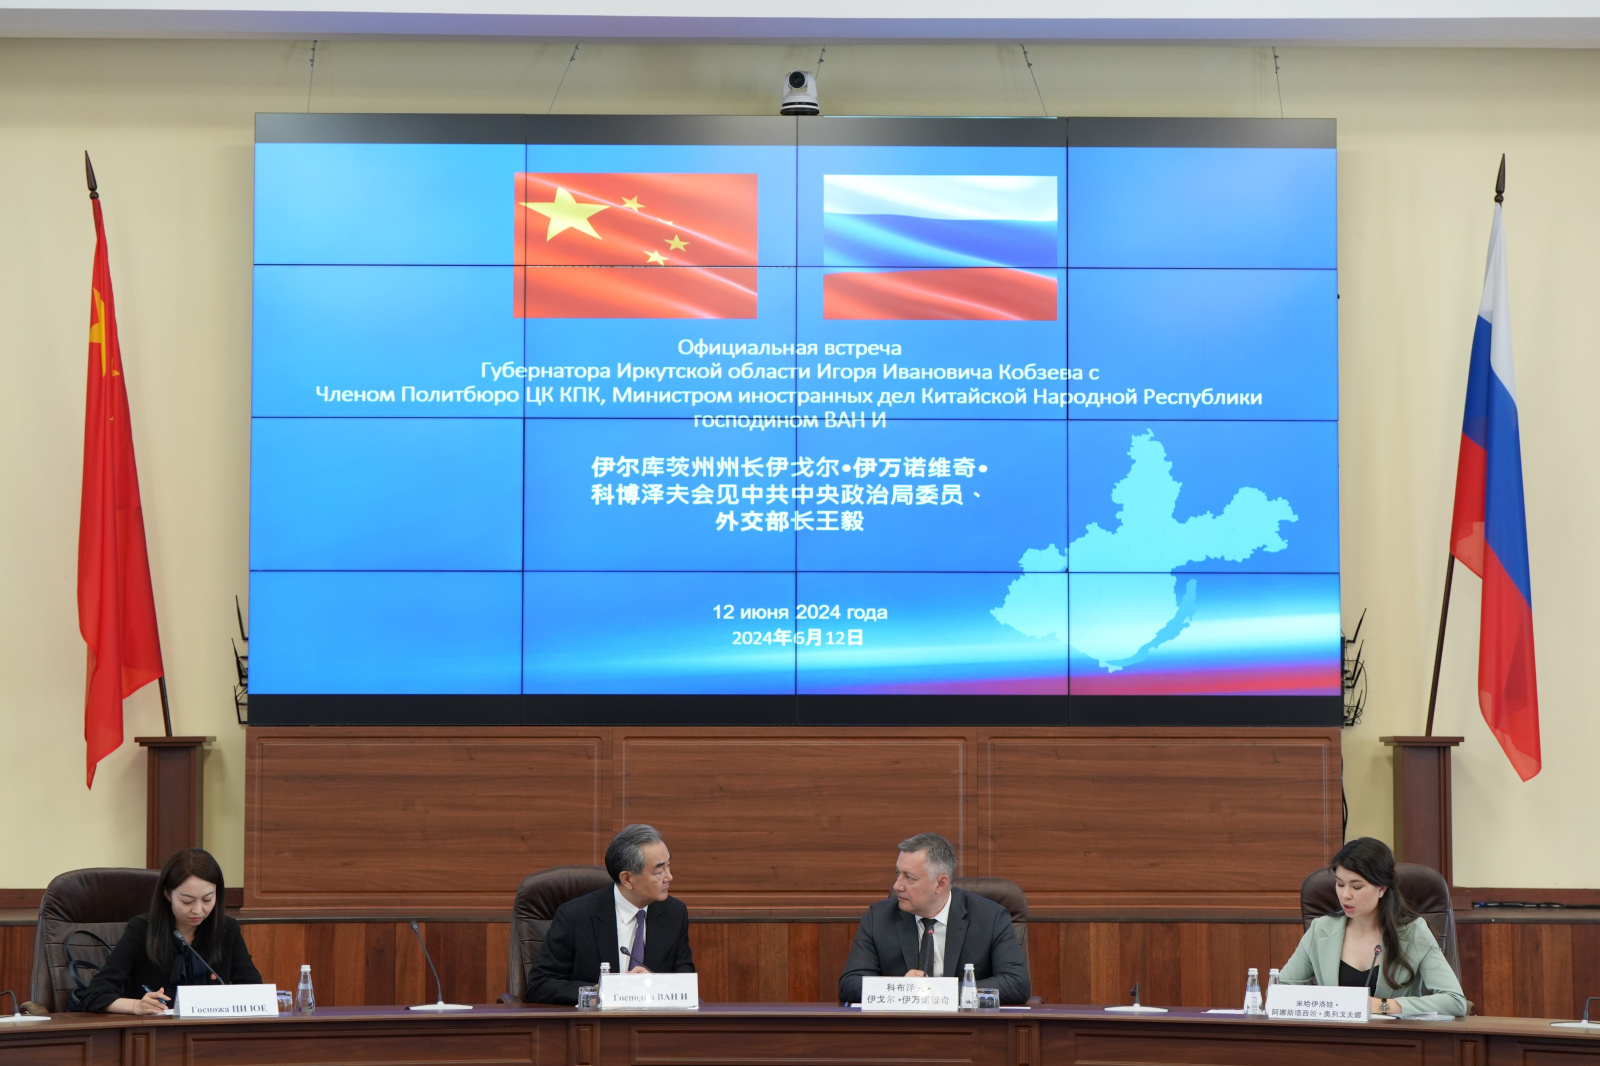 Официальная встреча российских и китайских представителей, 12 июня 2024 года.